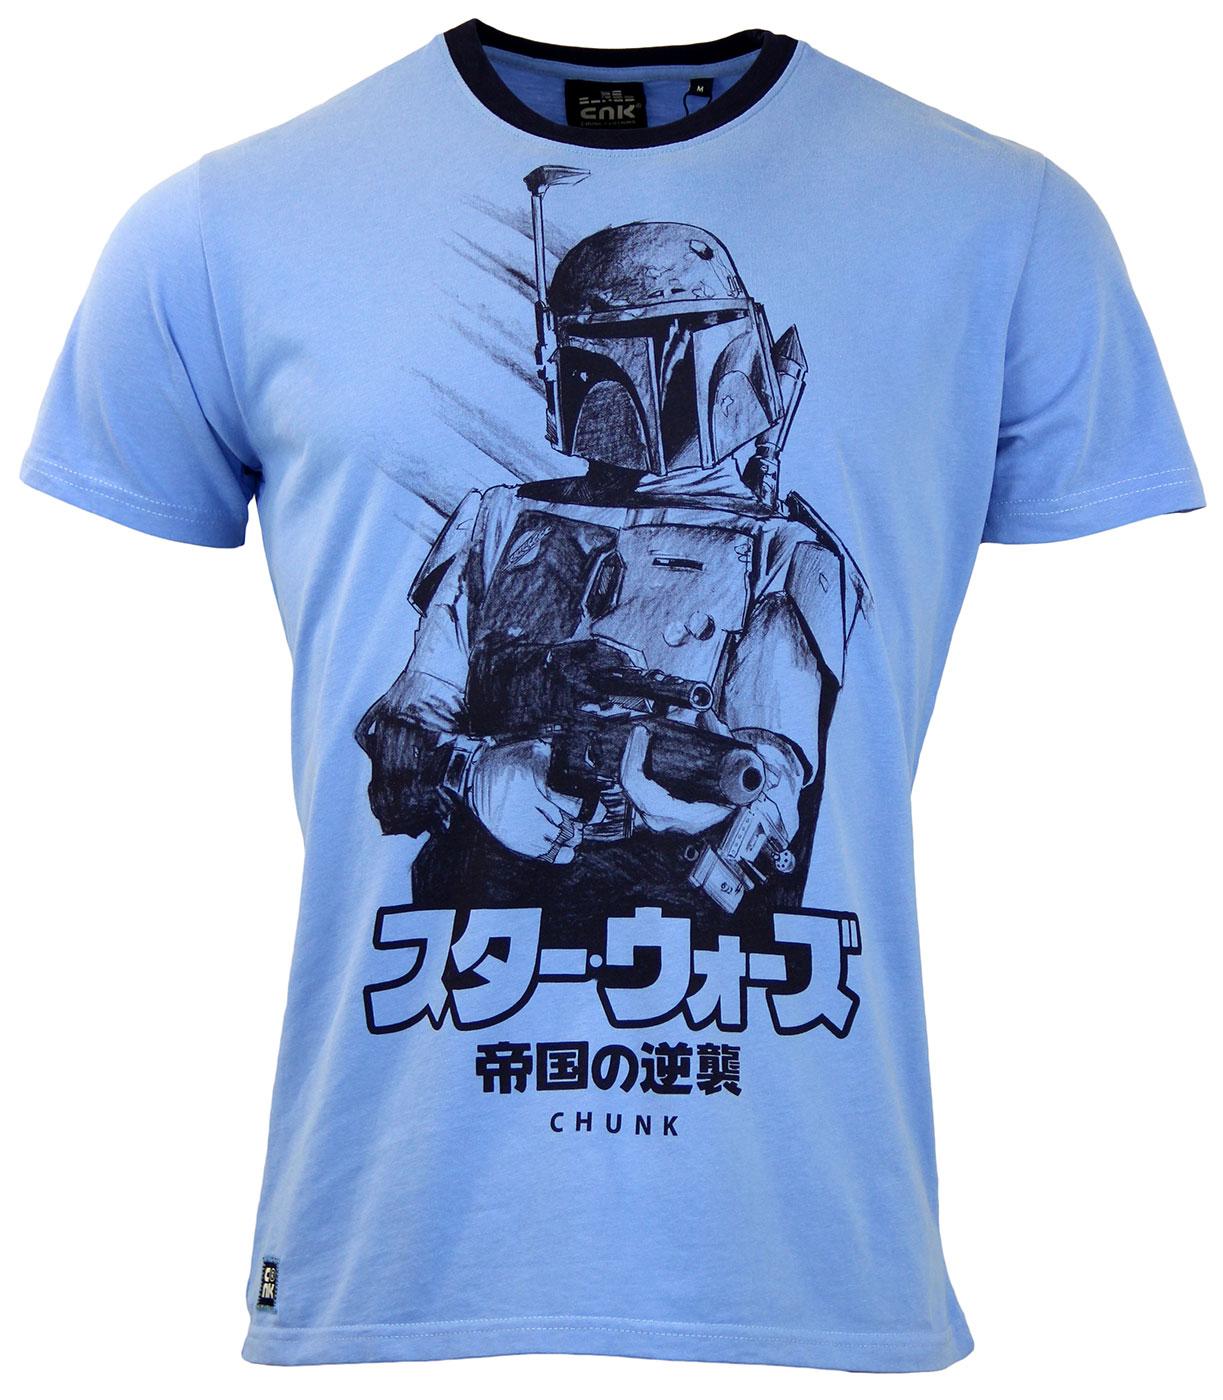 japanese star wars t shirt